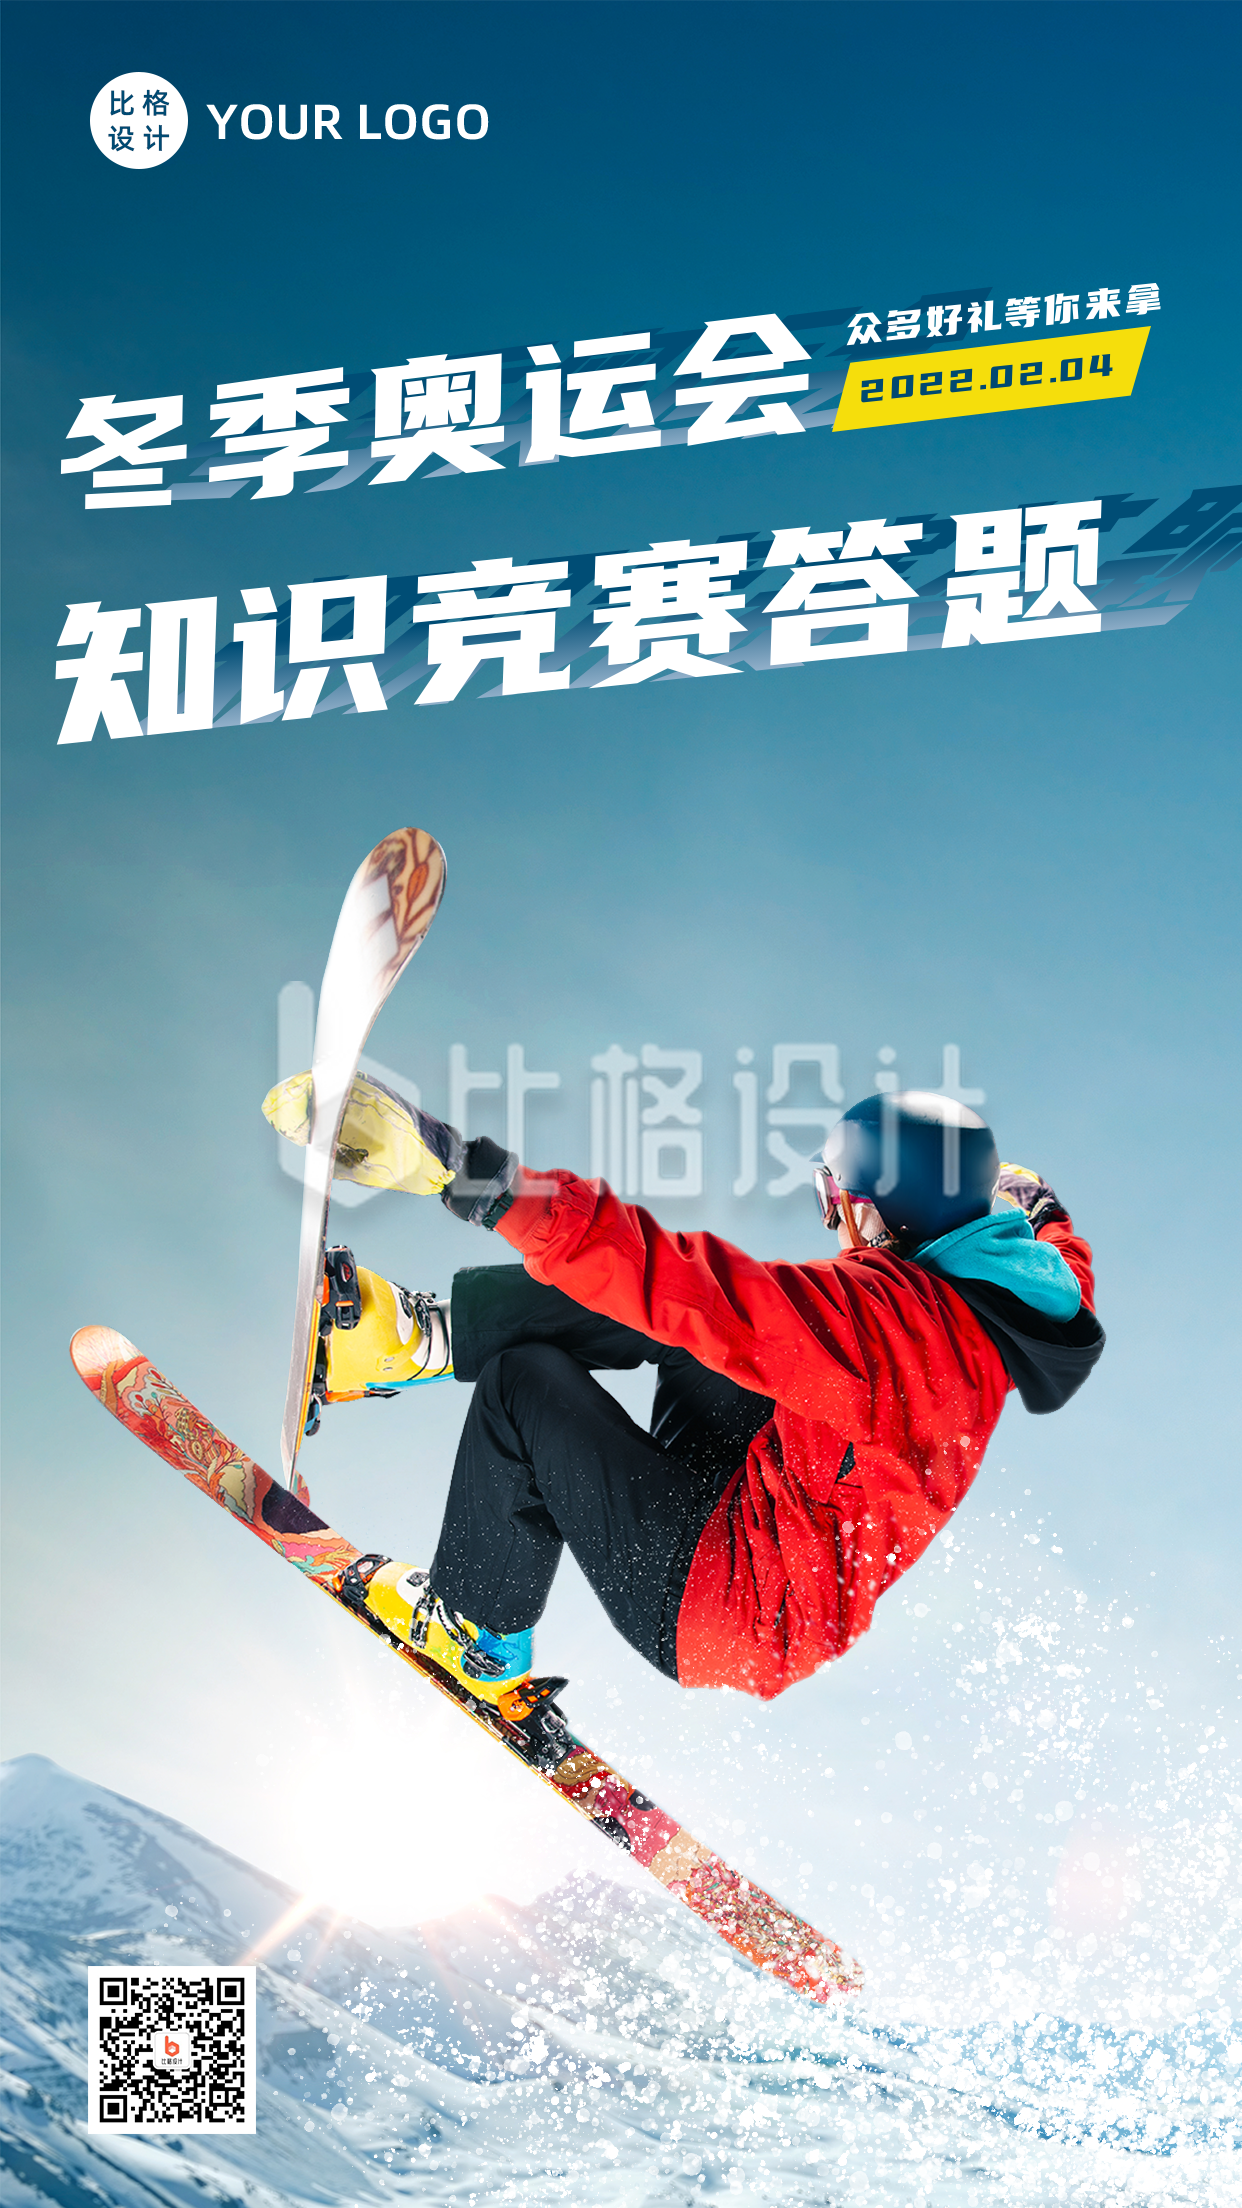 北京冬季奥运会开幕加油助威手机海报